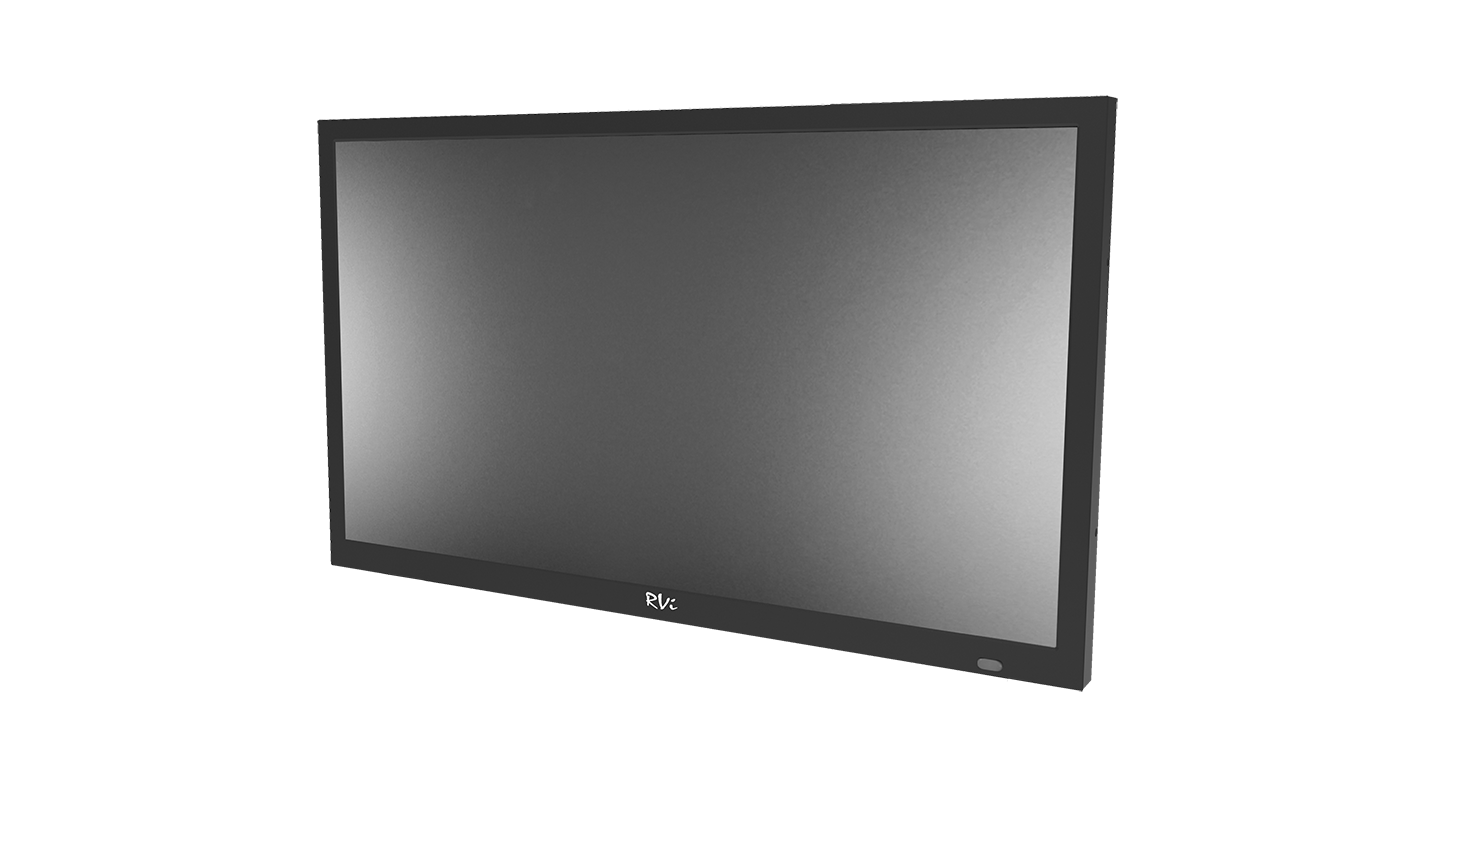 Компания RVi объявила о начале продаж нового специализированного монитора для систем видеонаблюдения диагональю 43 дюйма